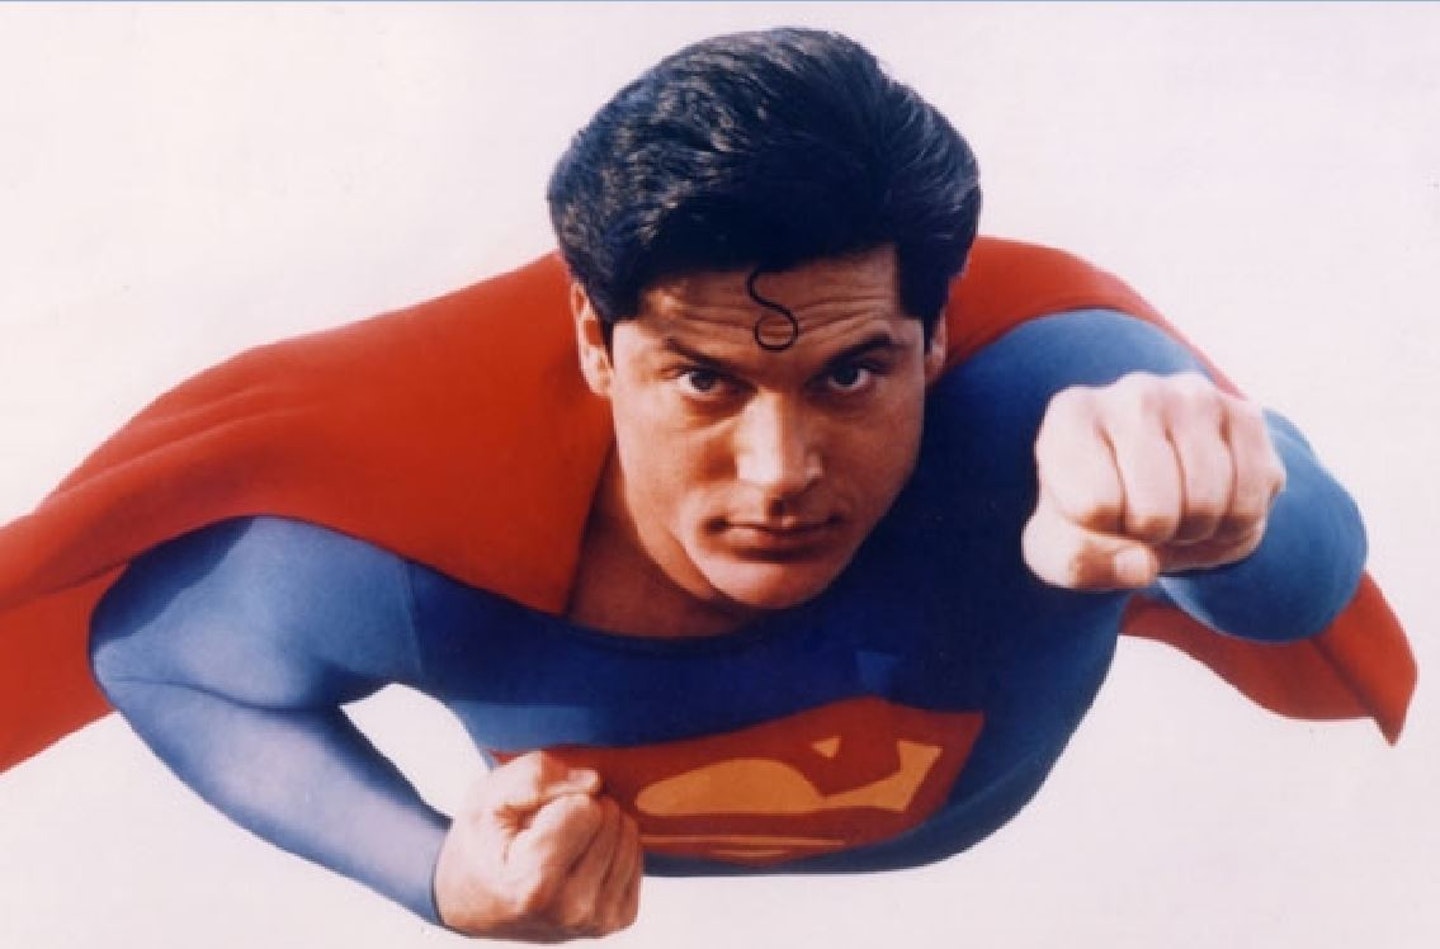 Matt Bomer Confirms He Almost Played Superman